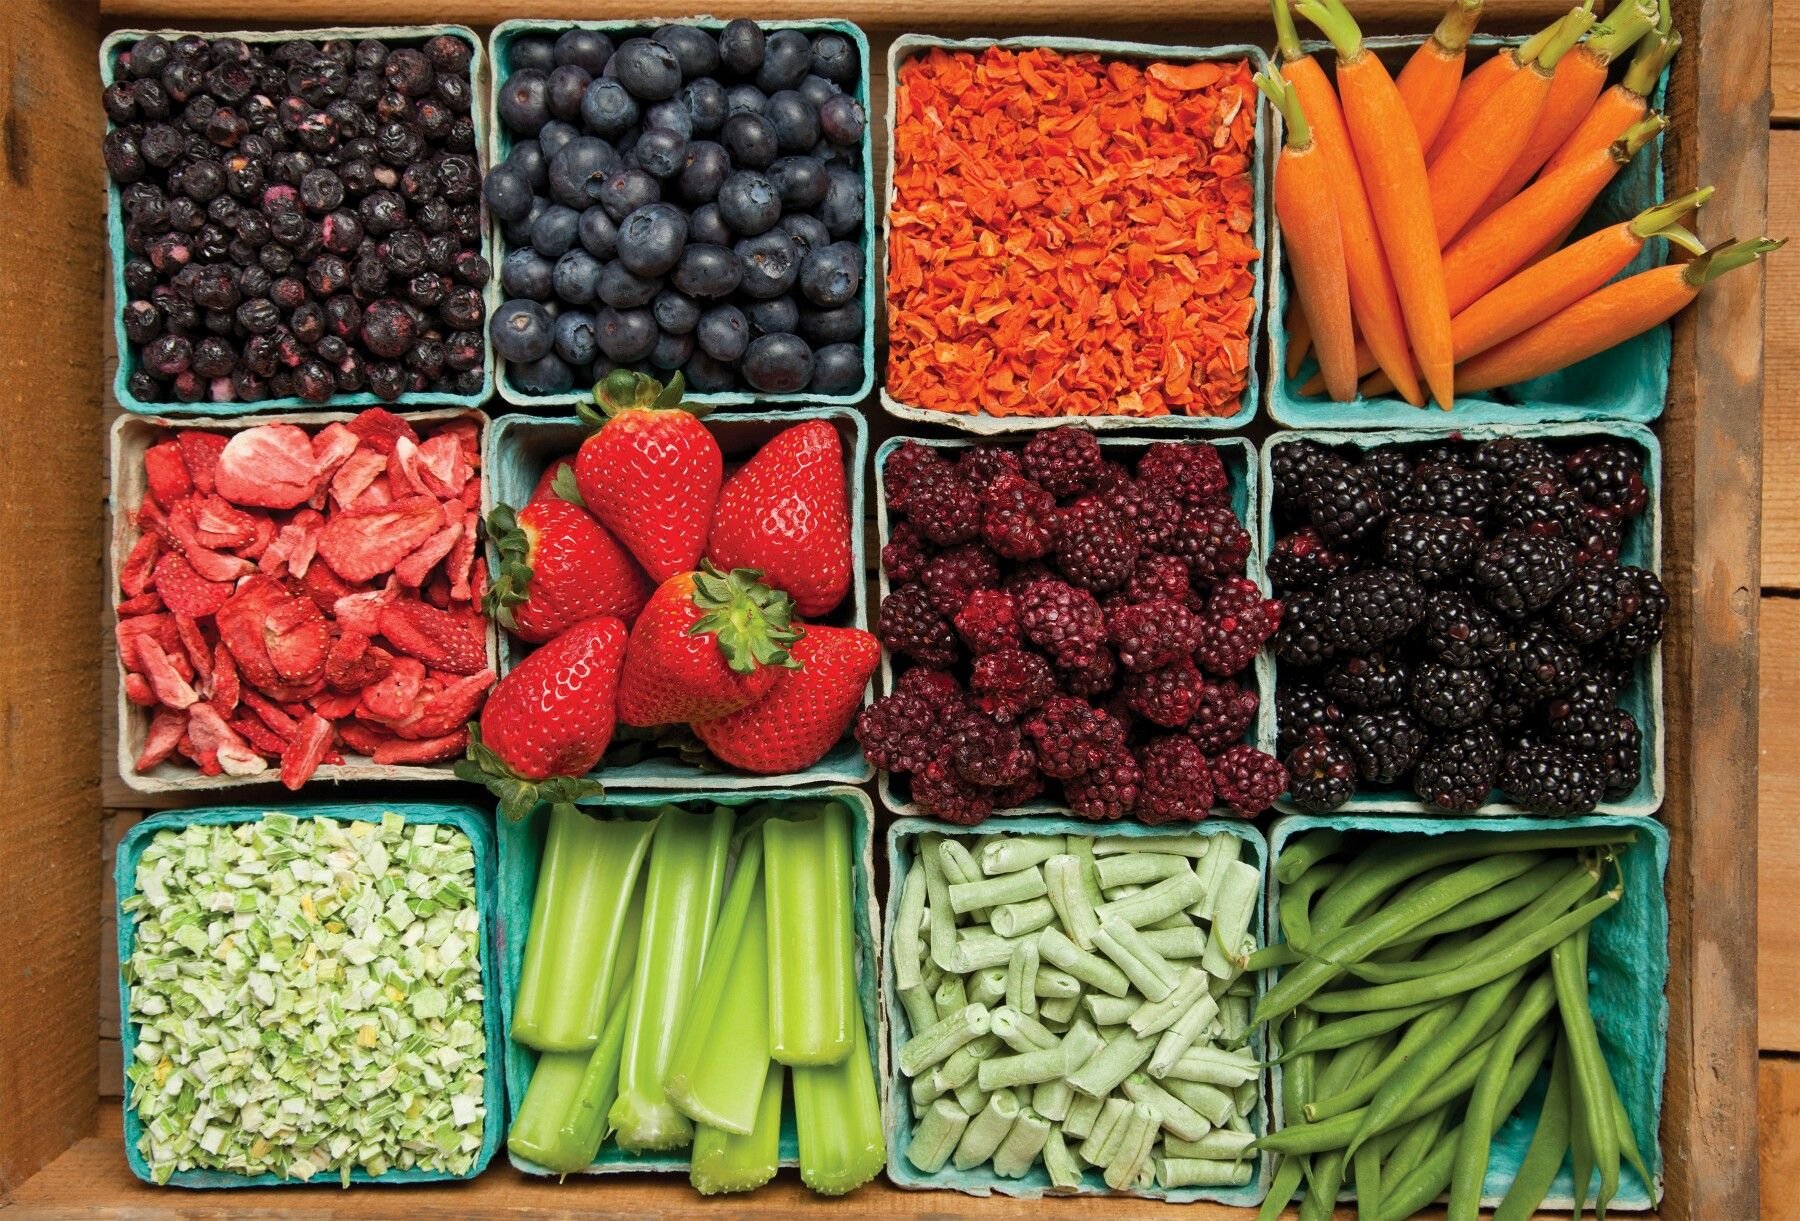 Vegetable products. Плоды и овощи. Овощи, фрукты, ягоды. Переработанные овощи и плоды. Хранение и переработка плодов и овощей.